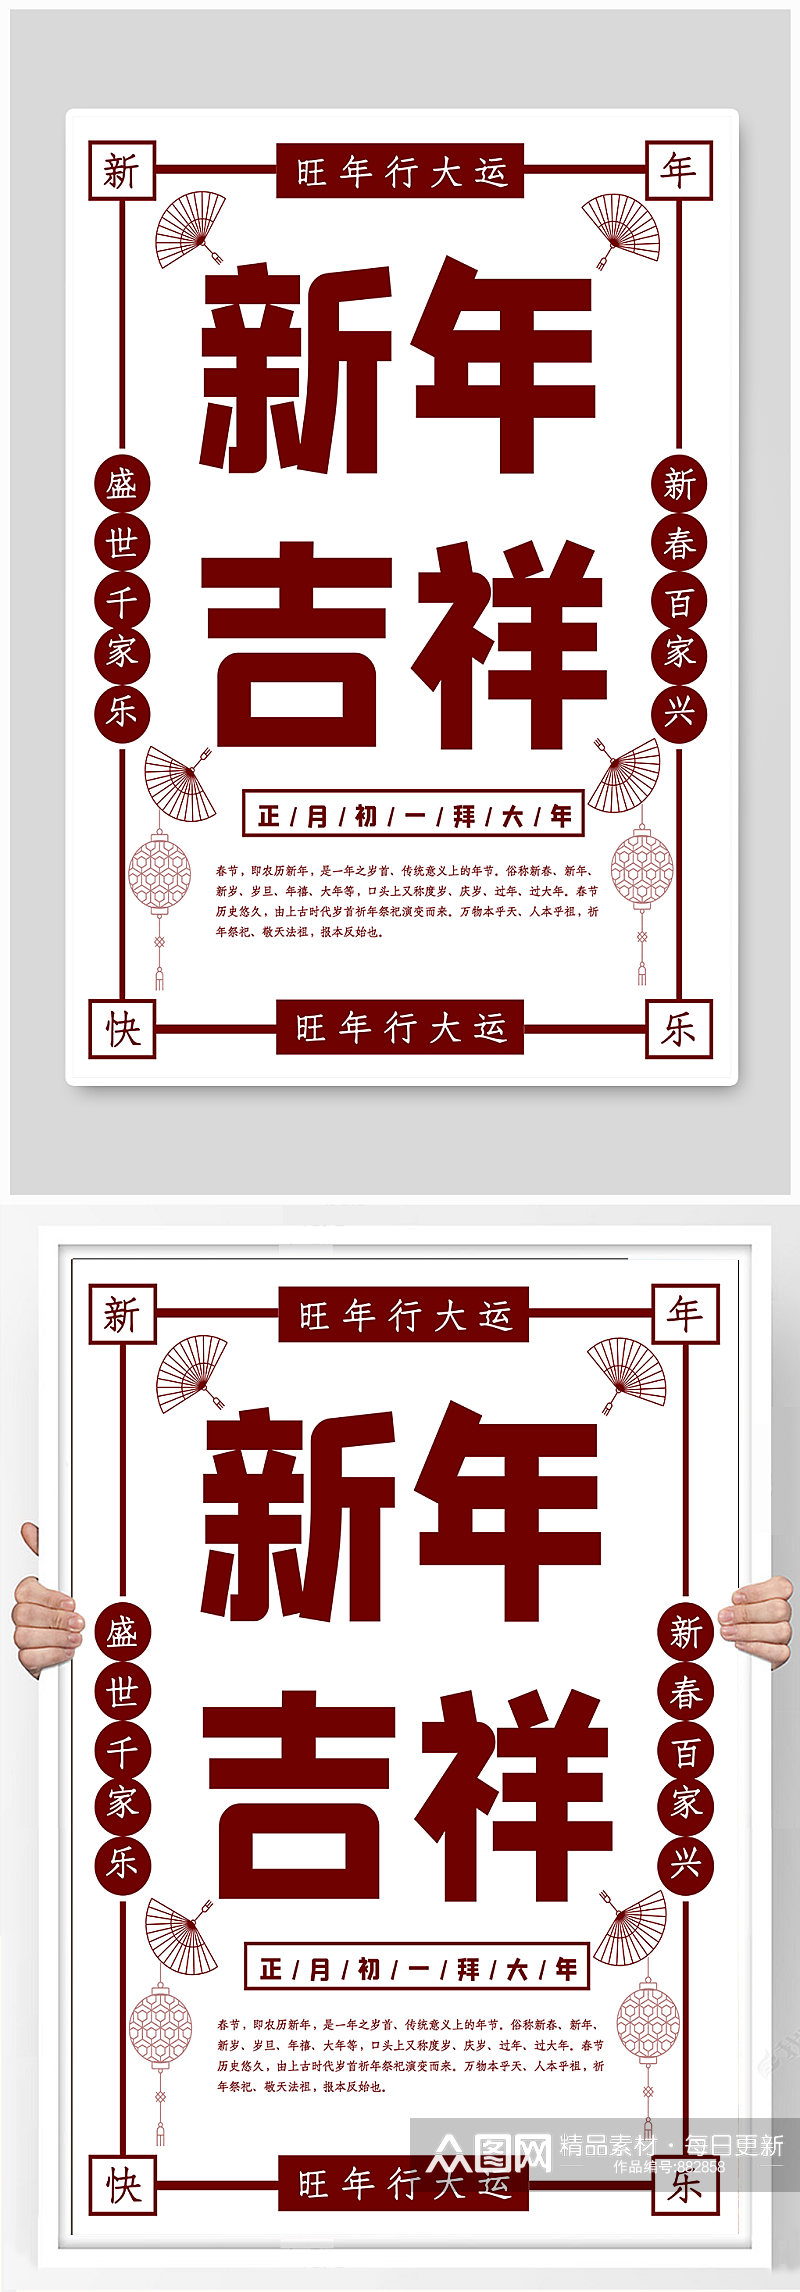 传统节日春节海报素材